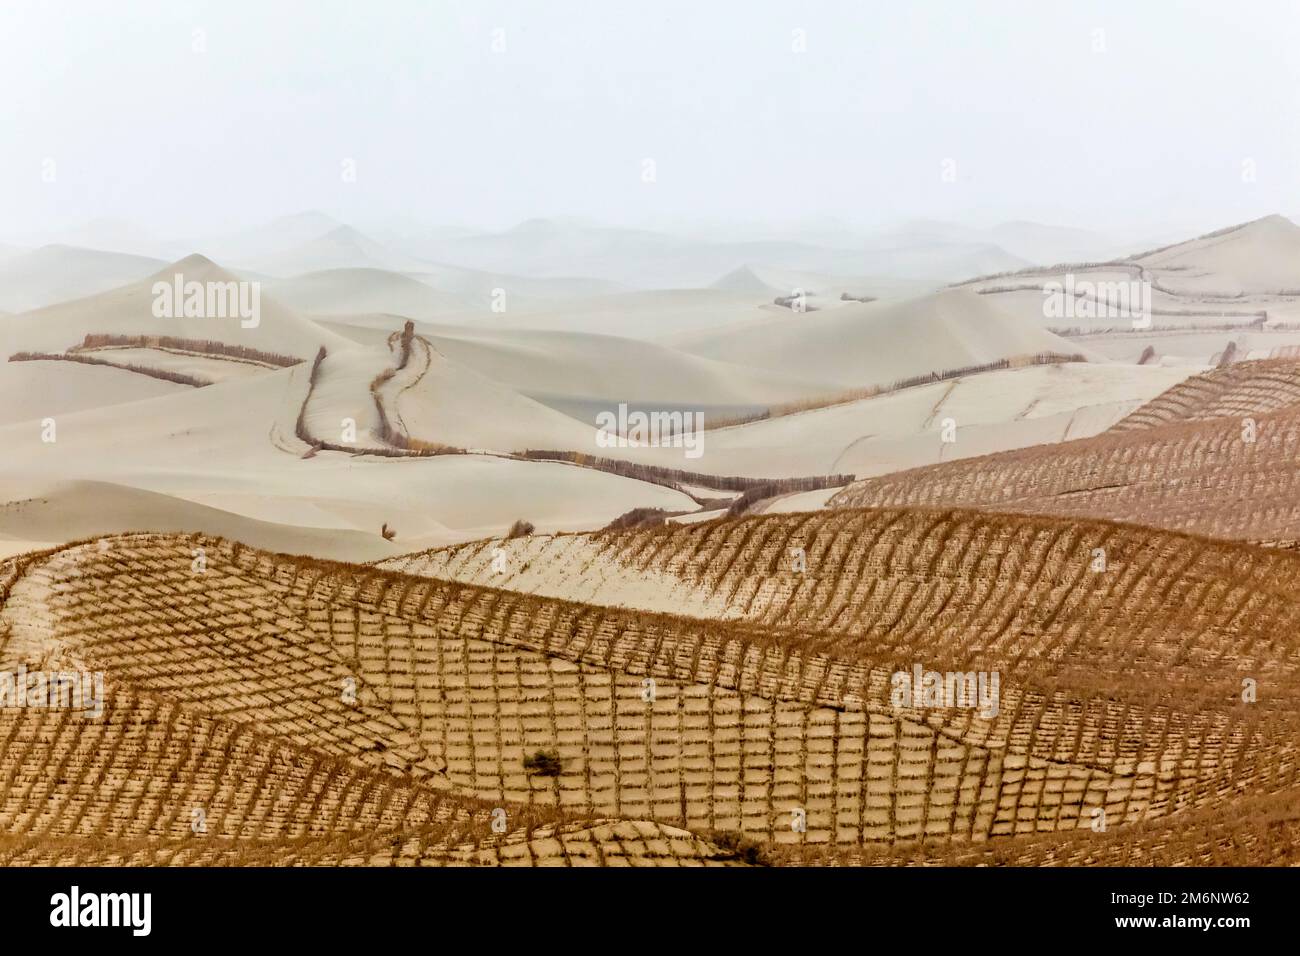 De la paille plantée pour empêcher les sables mouvants du désert de Taklamakan de se déplacer sur les routes et les zones résidentielles. Bassin de Tarim. Région autonome du Xinjiang (Sinkiang) Banque D'Images